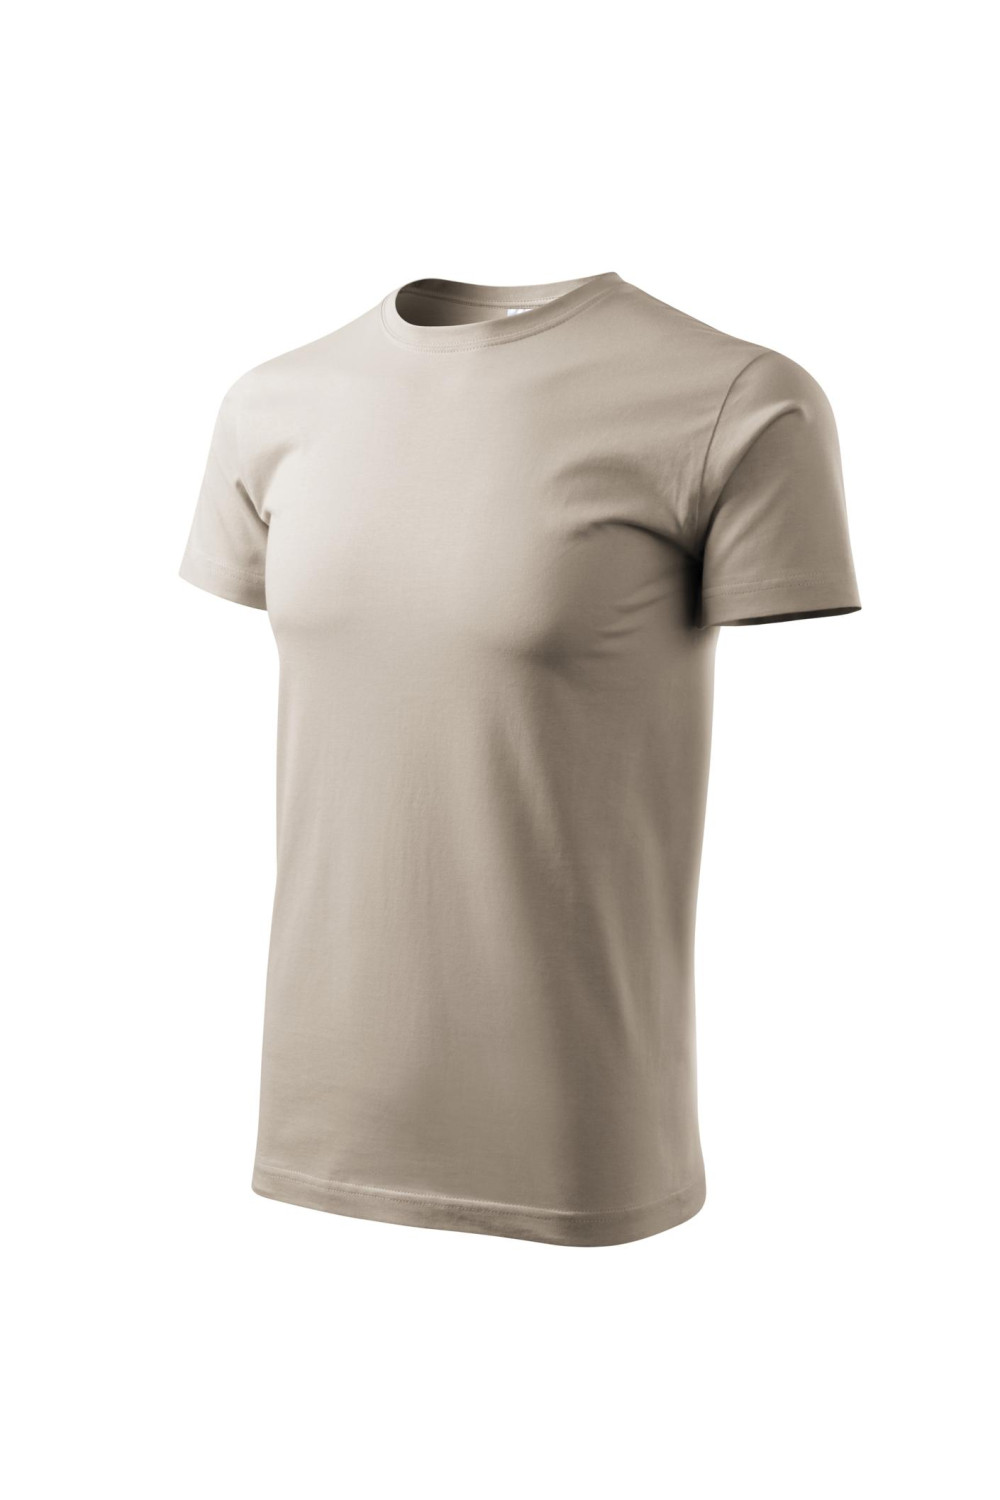 Koszulka męska 100% bawełna BASIC 129  kolor lodowo siwy